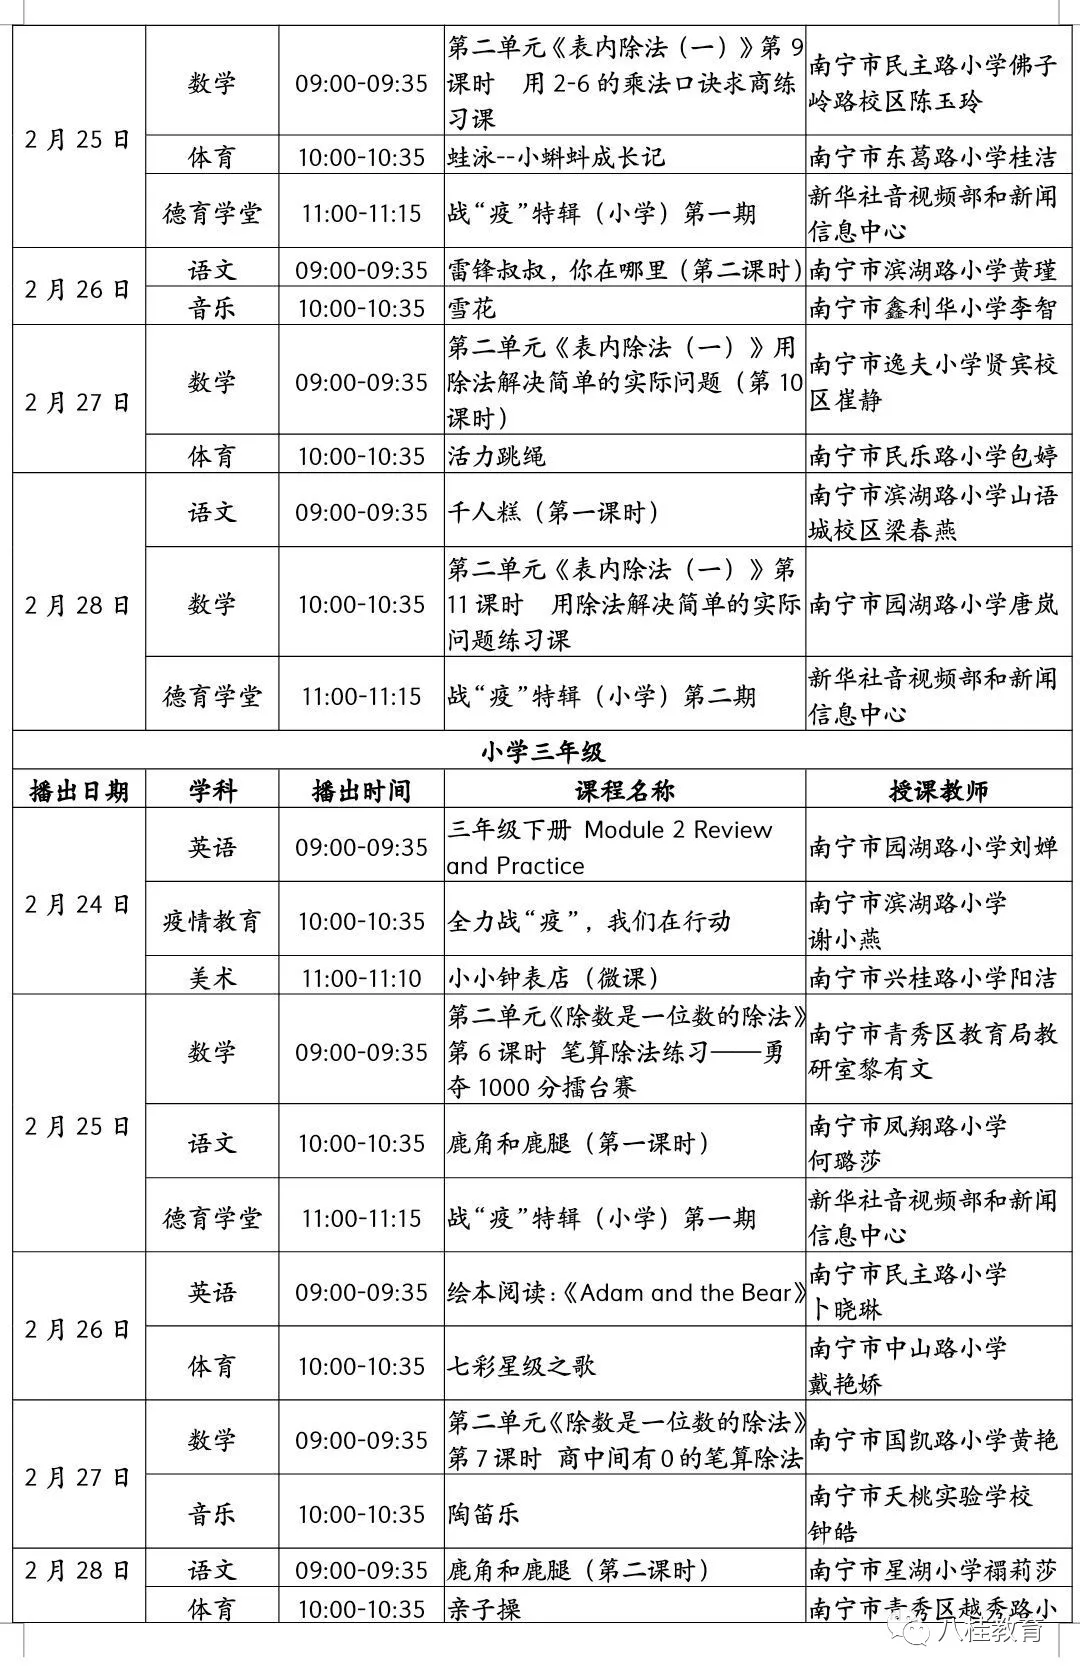 广西师范大学课程表